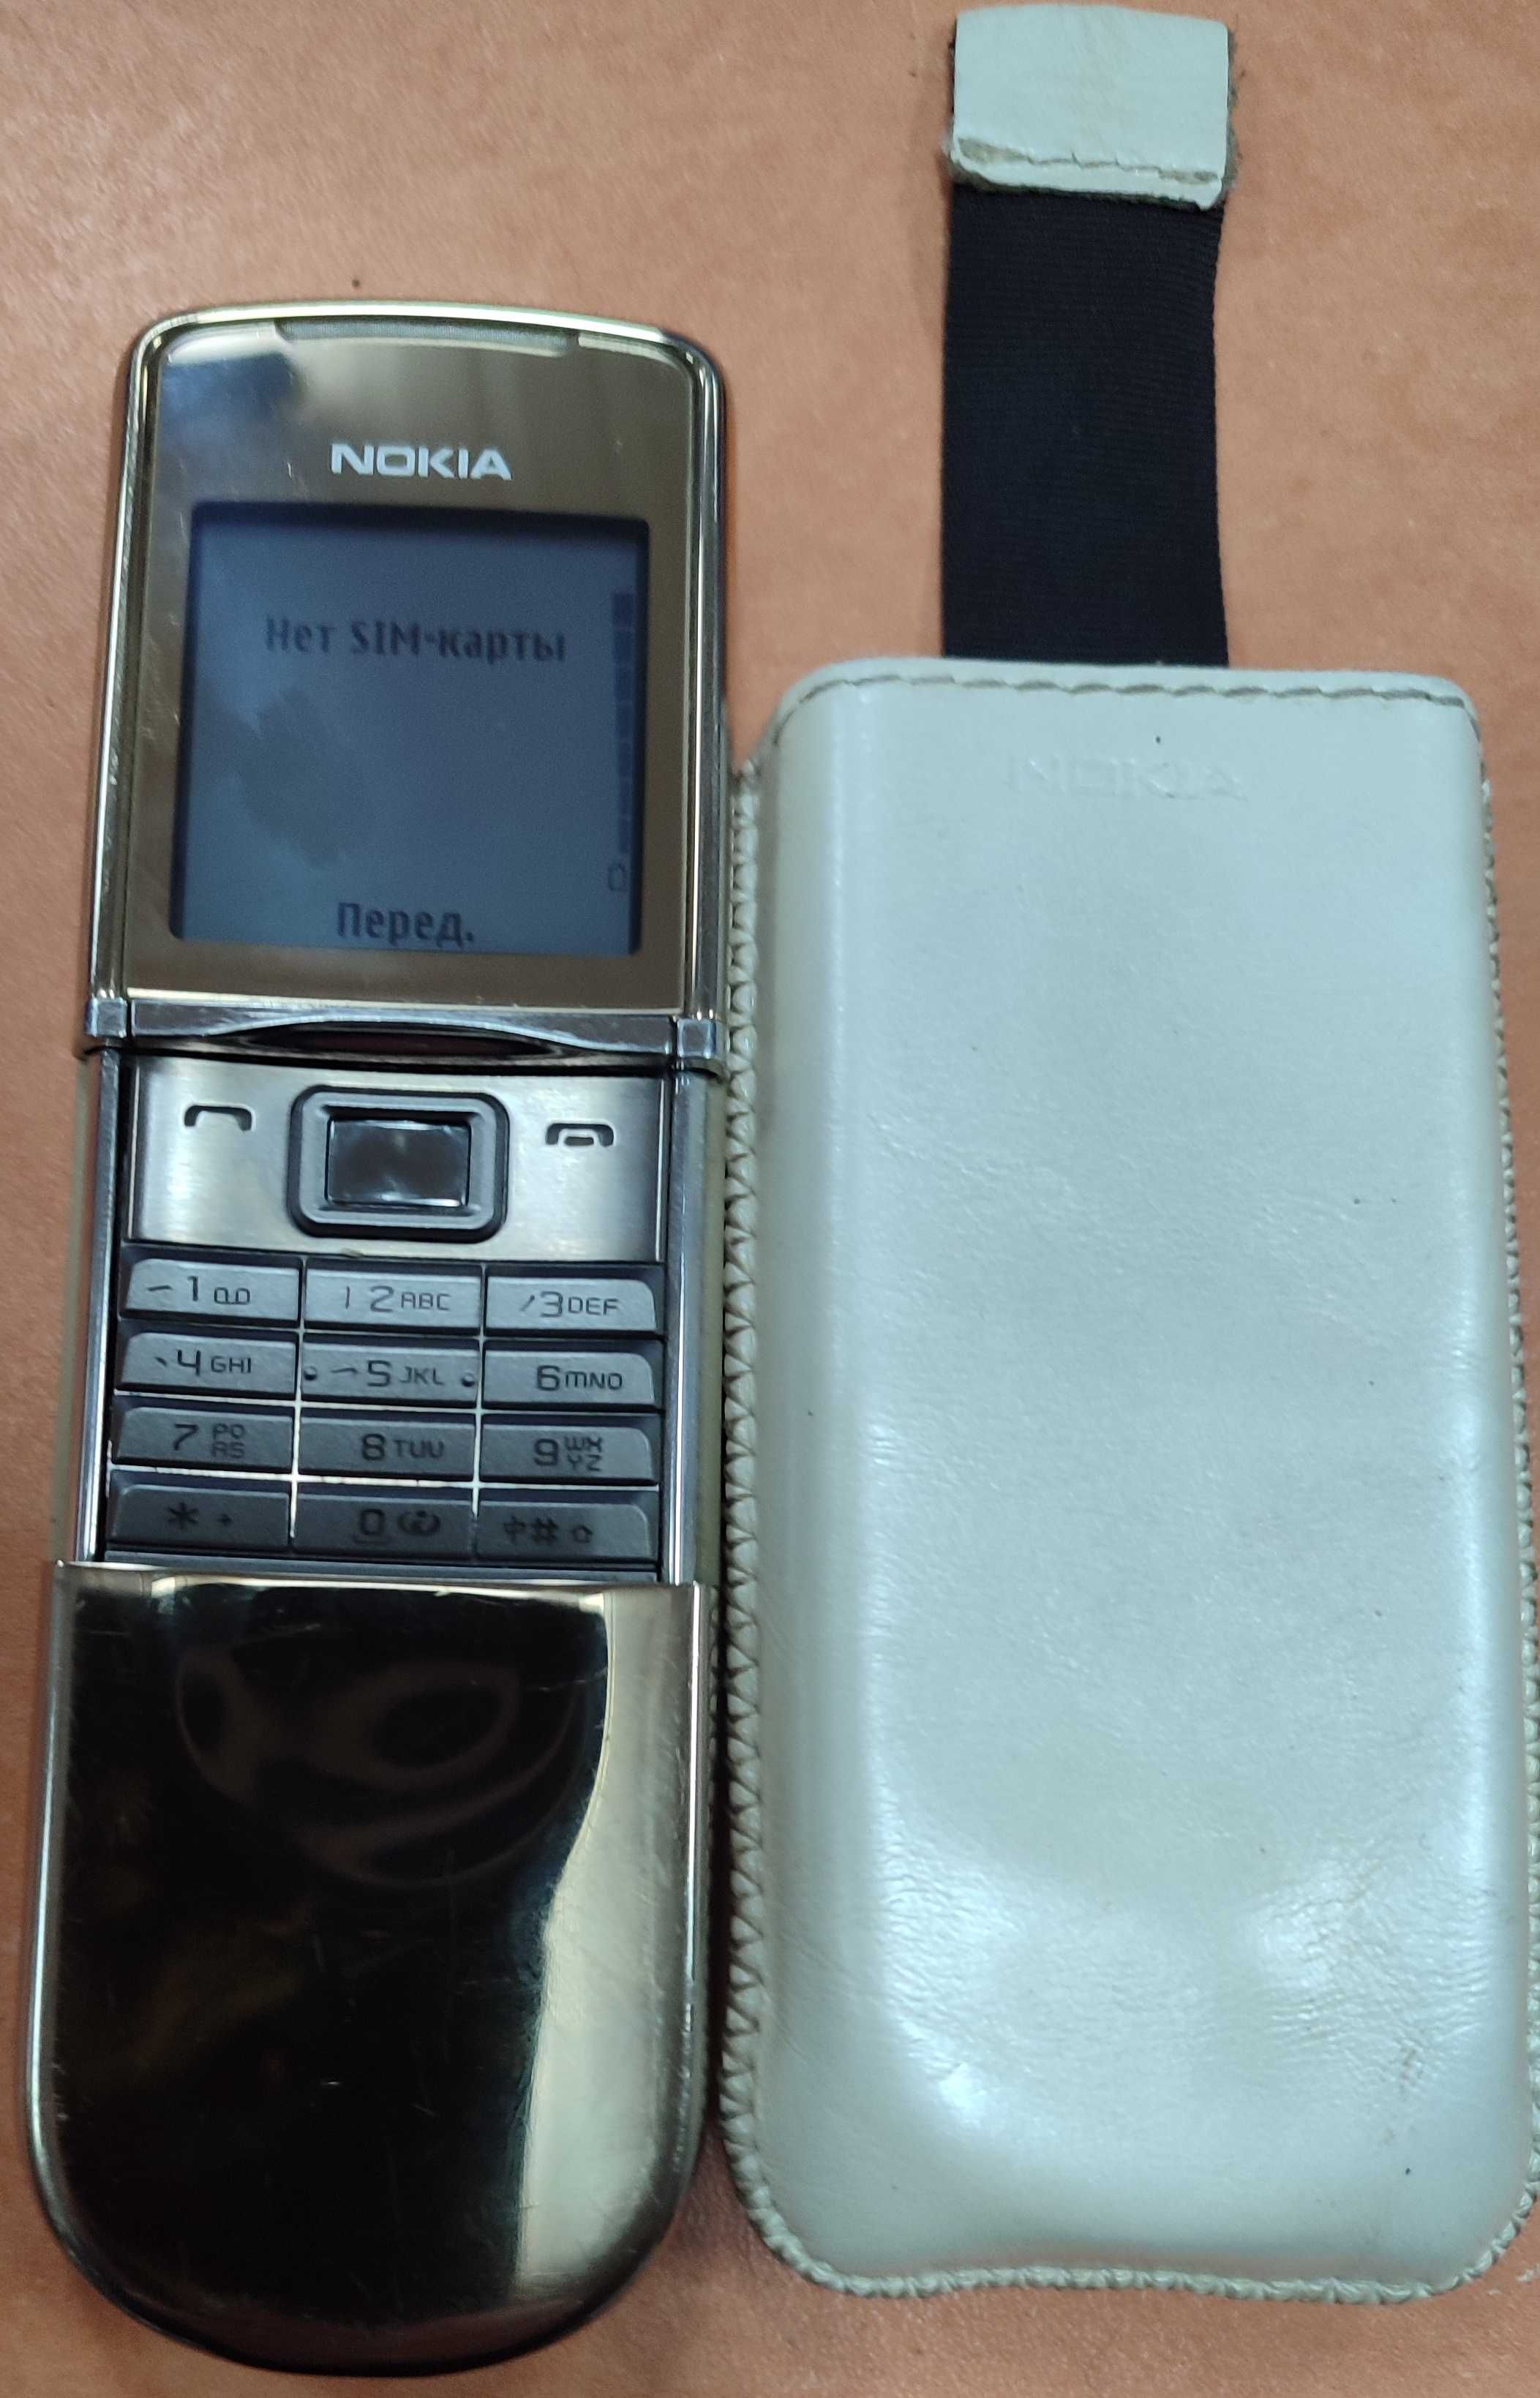 Nokia 8800 Sirocco Edition Gold